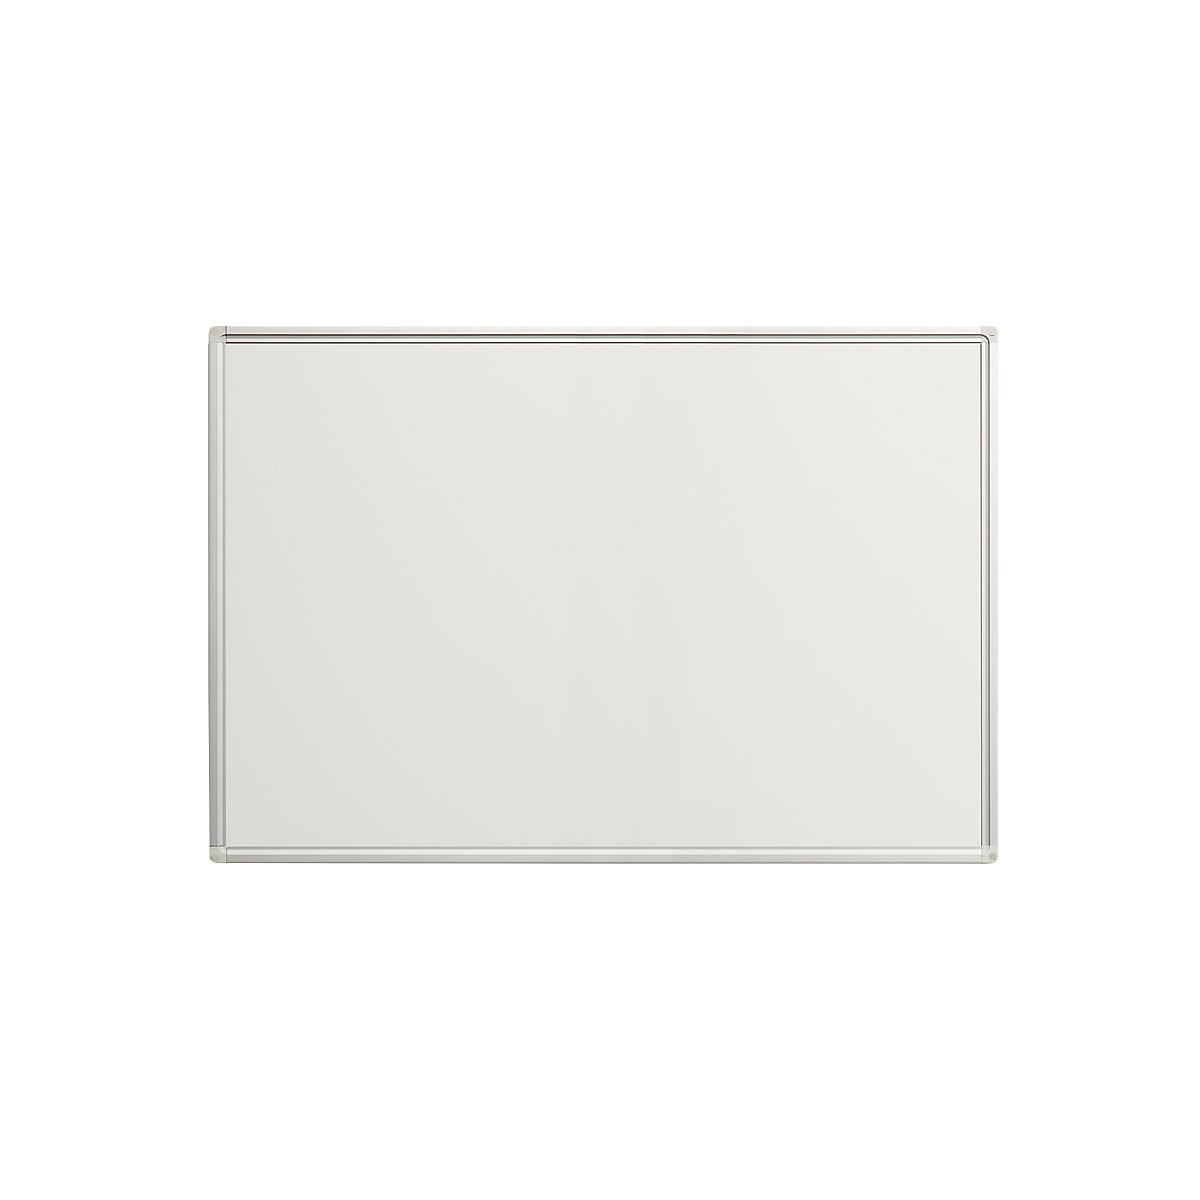 Tableau blanc Economy – eurokraft pro, tôle d'acier laquée, l x h 900 x 600 mm-9